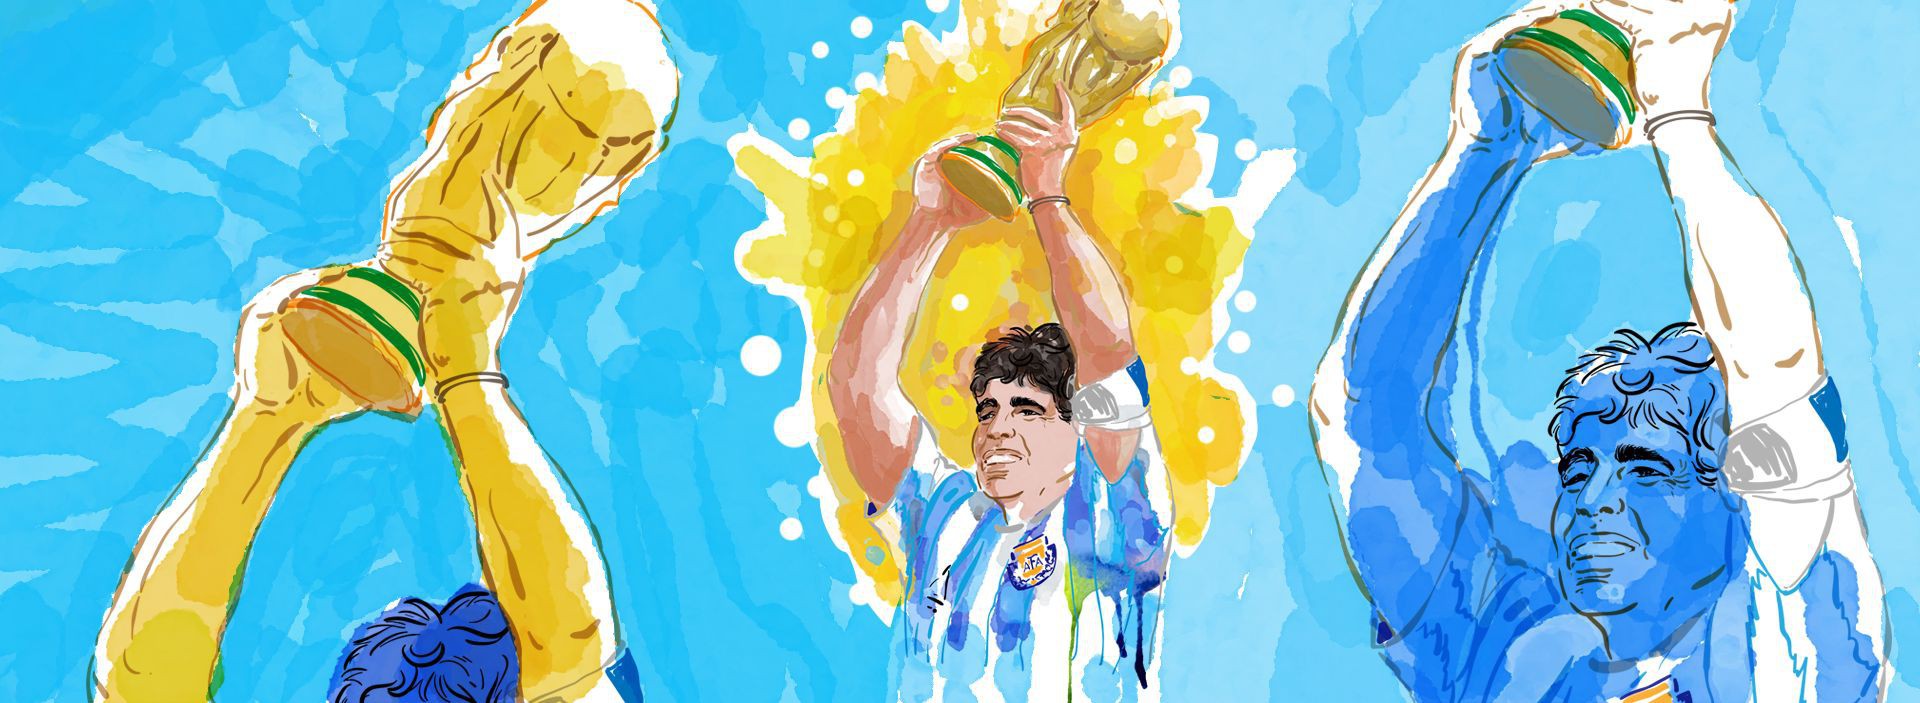 Capa da reportagem OP+ sobre a morte Diego Maradona, em 25 de novembro de 2020(Foto: Carlus Campus)